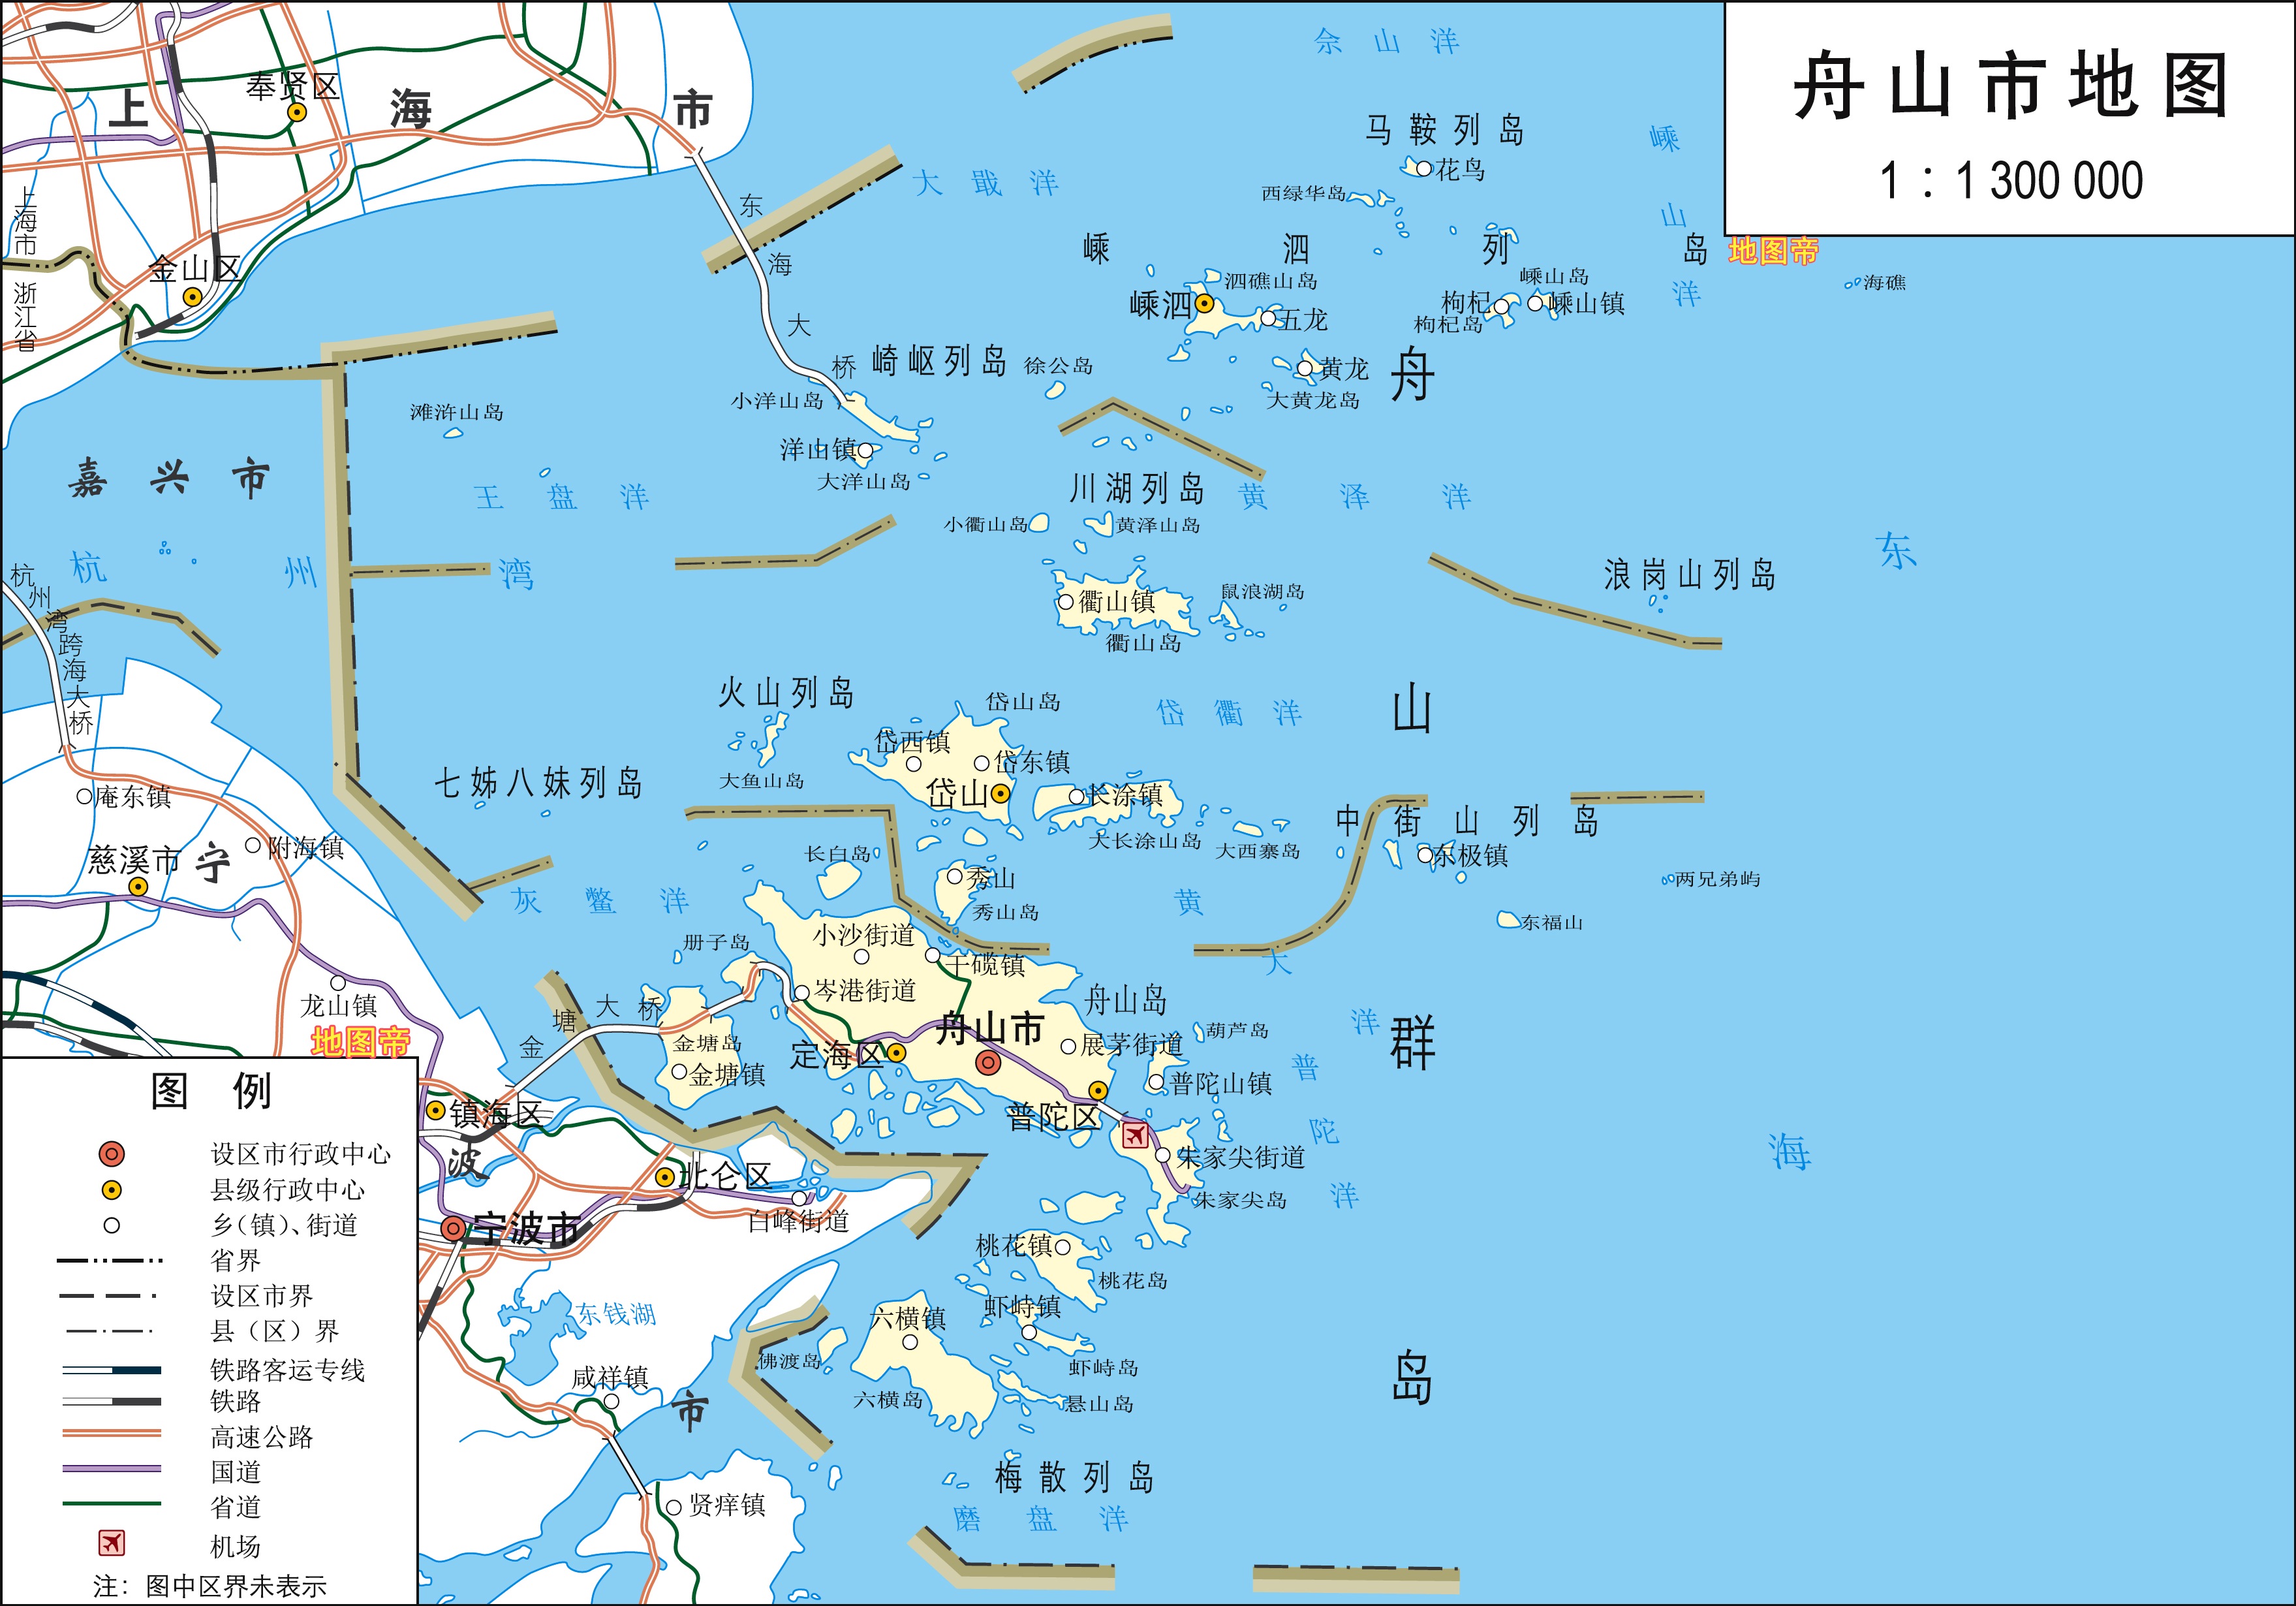 舟山市高清地图浙江陆地面积最小地级市